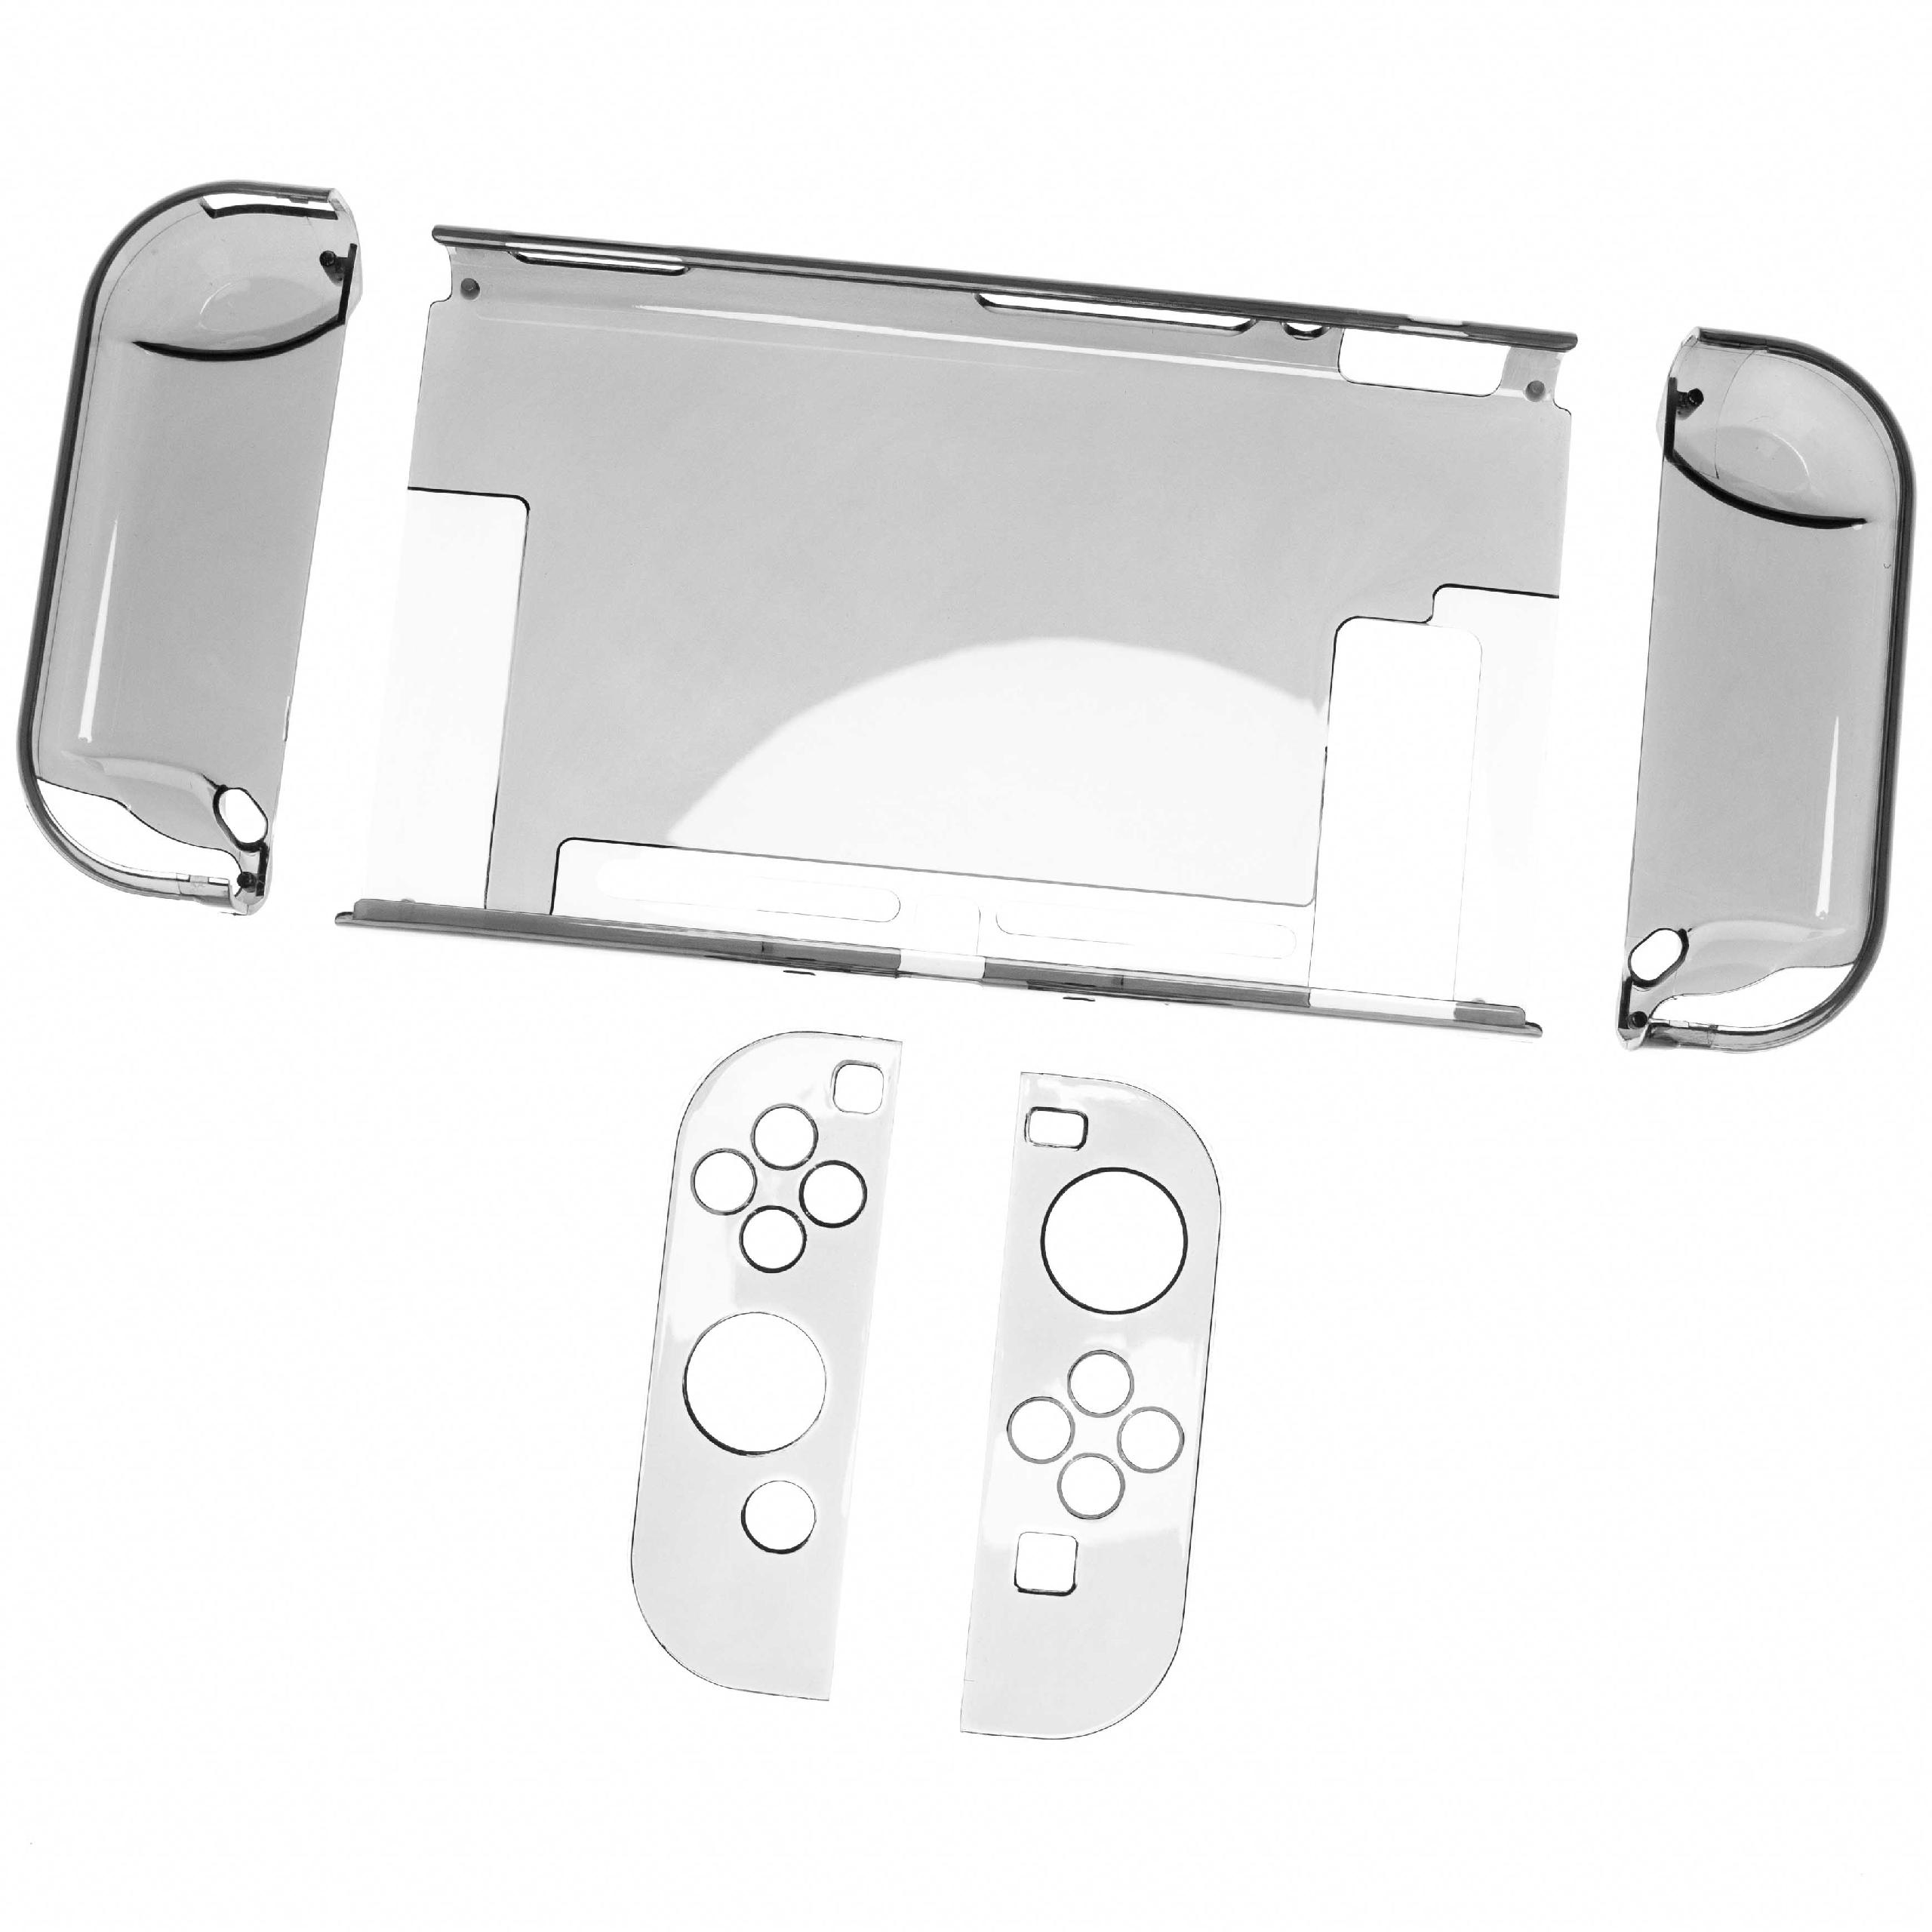 Funda para consolas Nintendo Switch - Estuche policarbonato transparente / negro